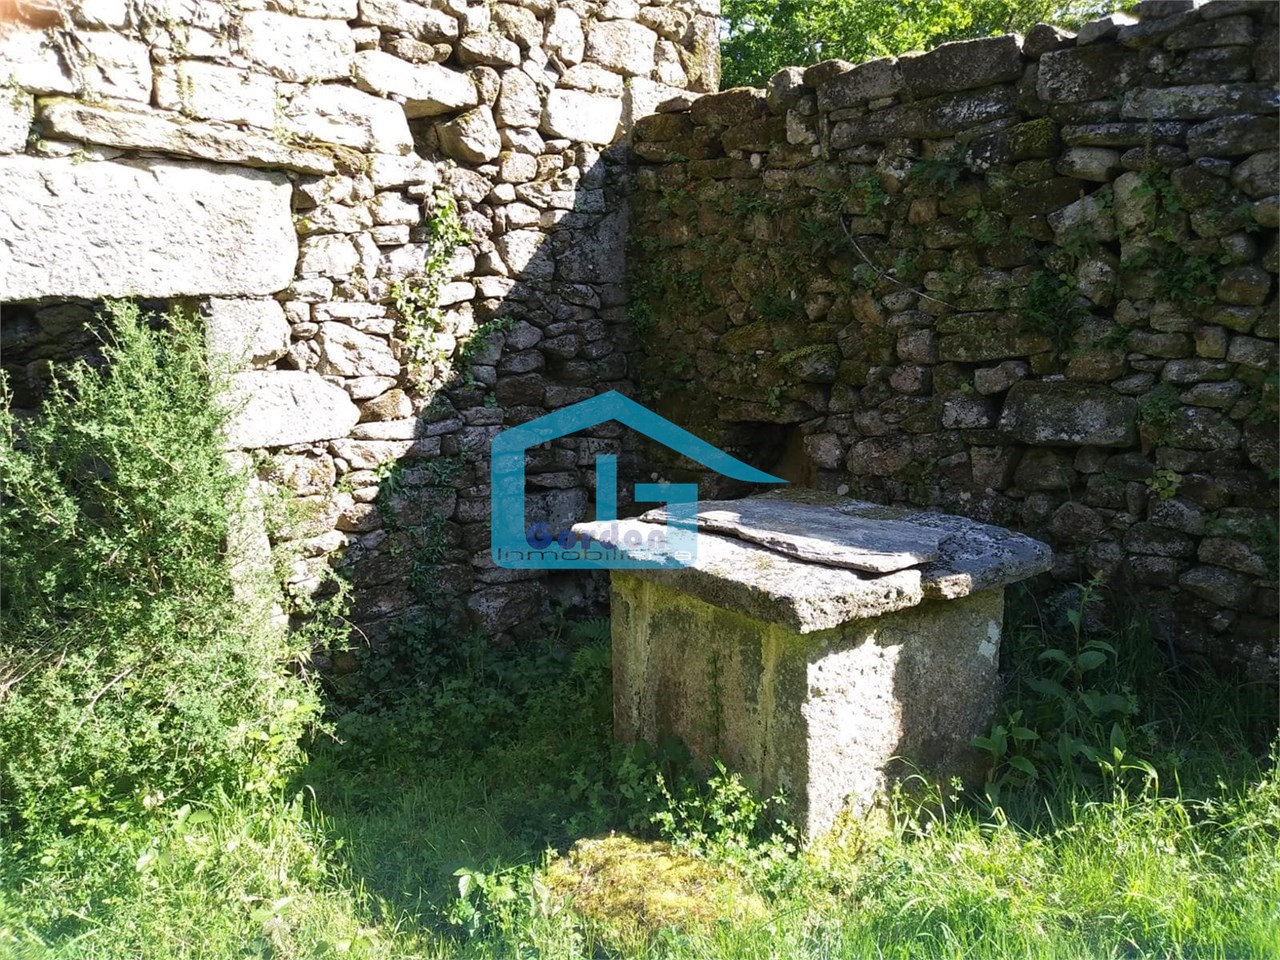 Foto 16 Cerdedo: A5826: Casa de piedra en ruinas, con finca alrededor... preciosas vistas...